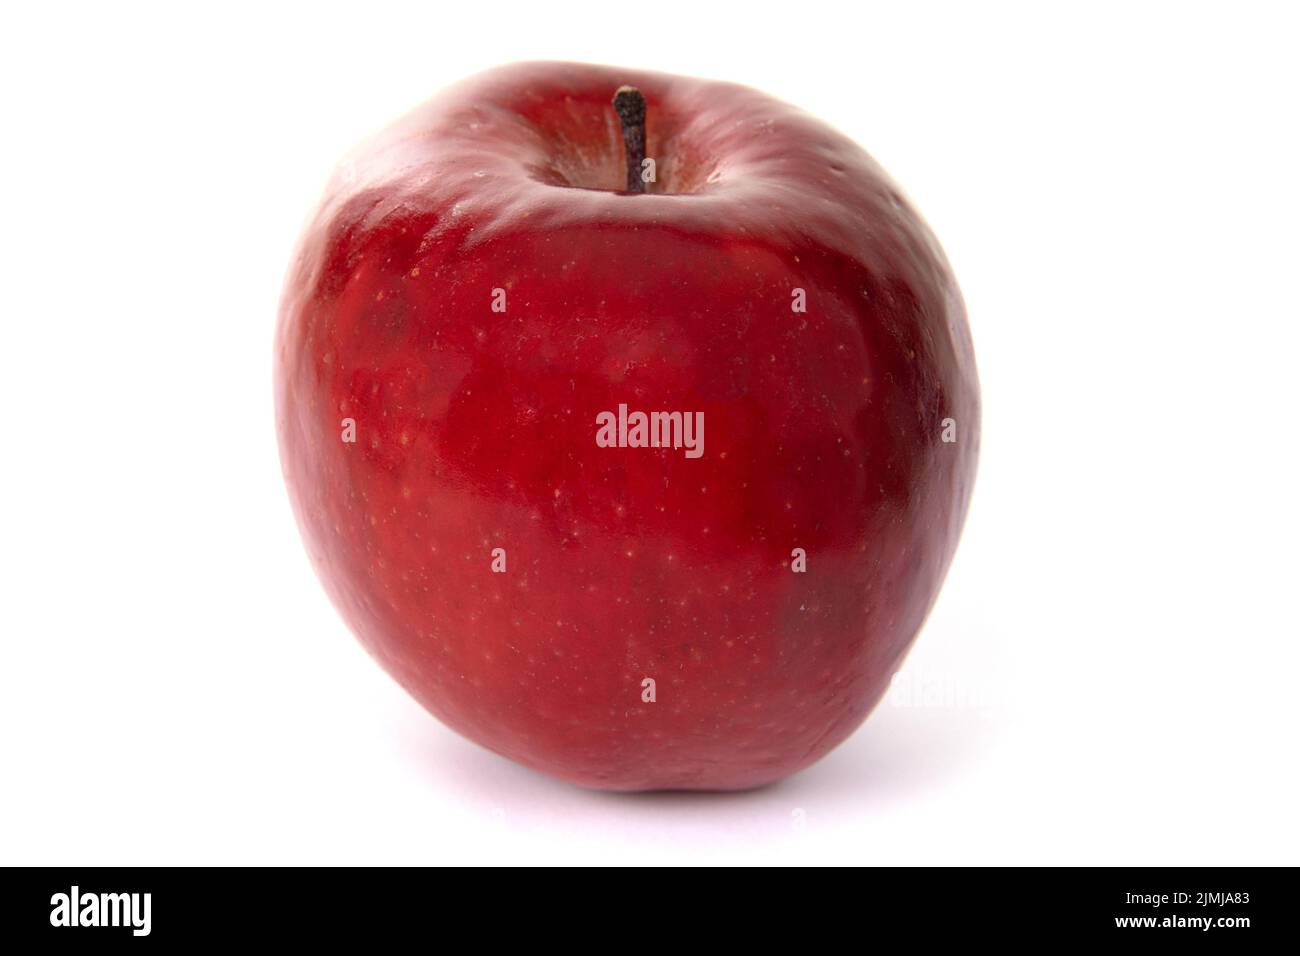 https://c8.alamy.com/comp/2JMJA83/big-red-apple-on-white-background-2JMJA83.jpg